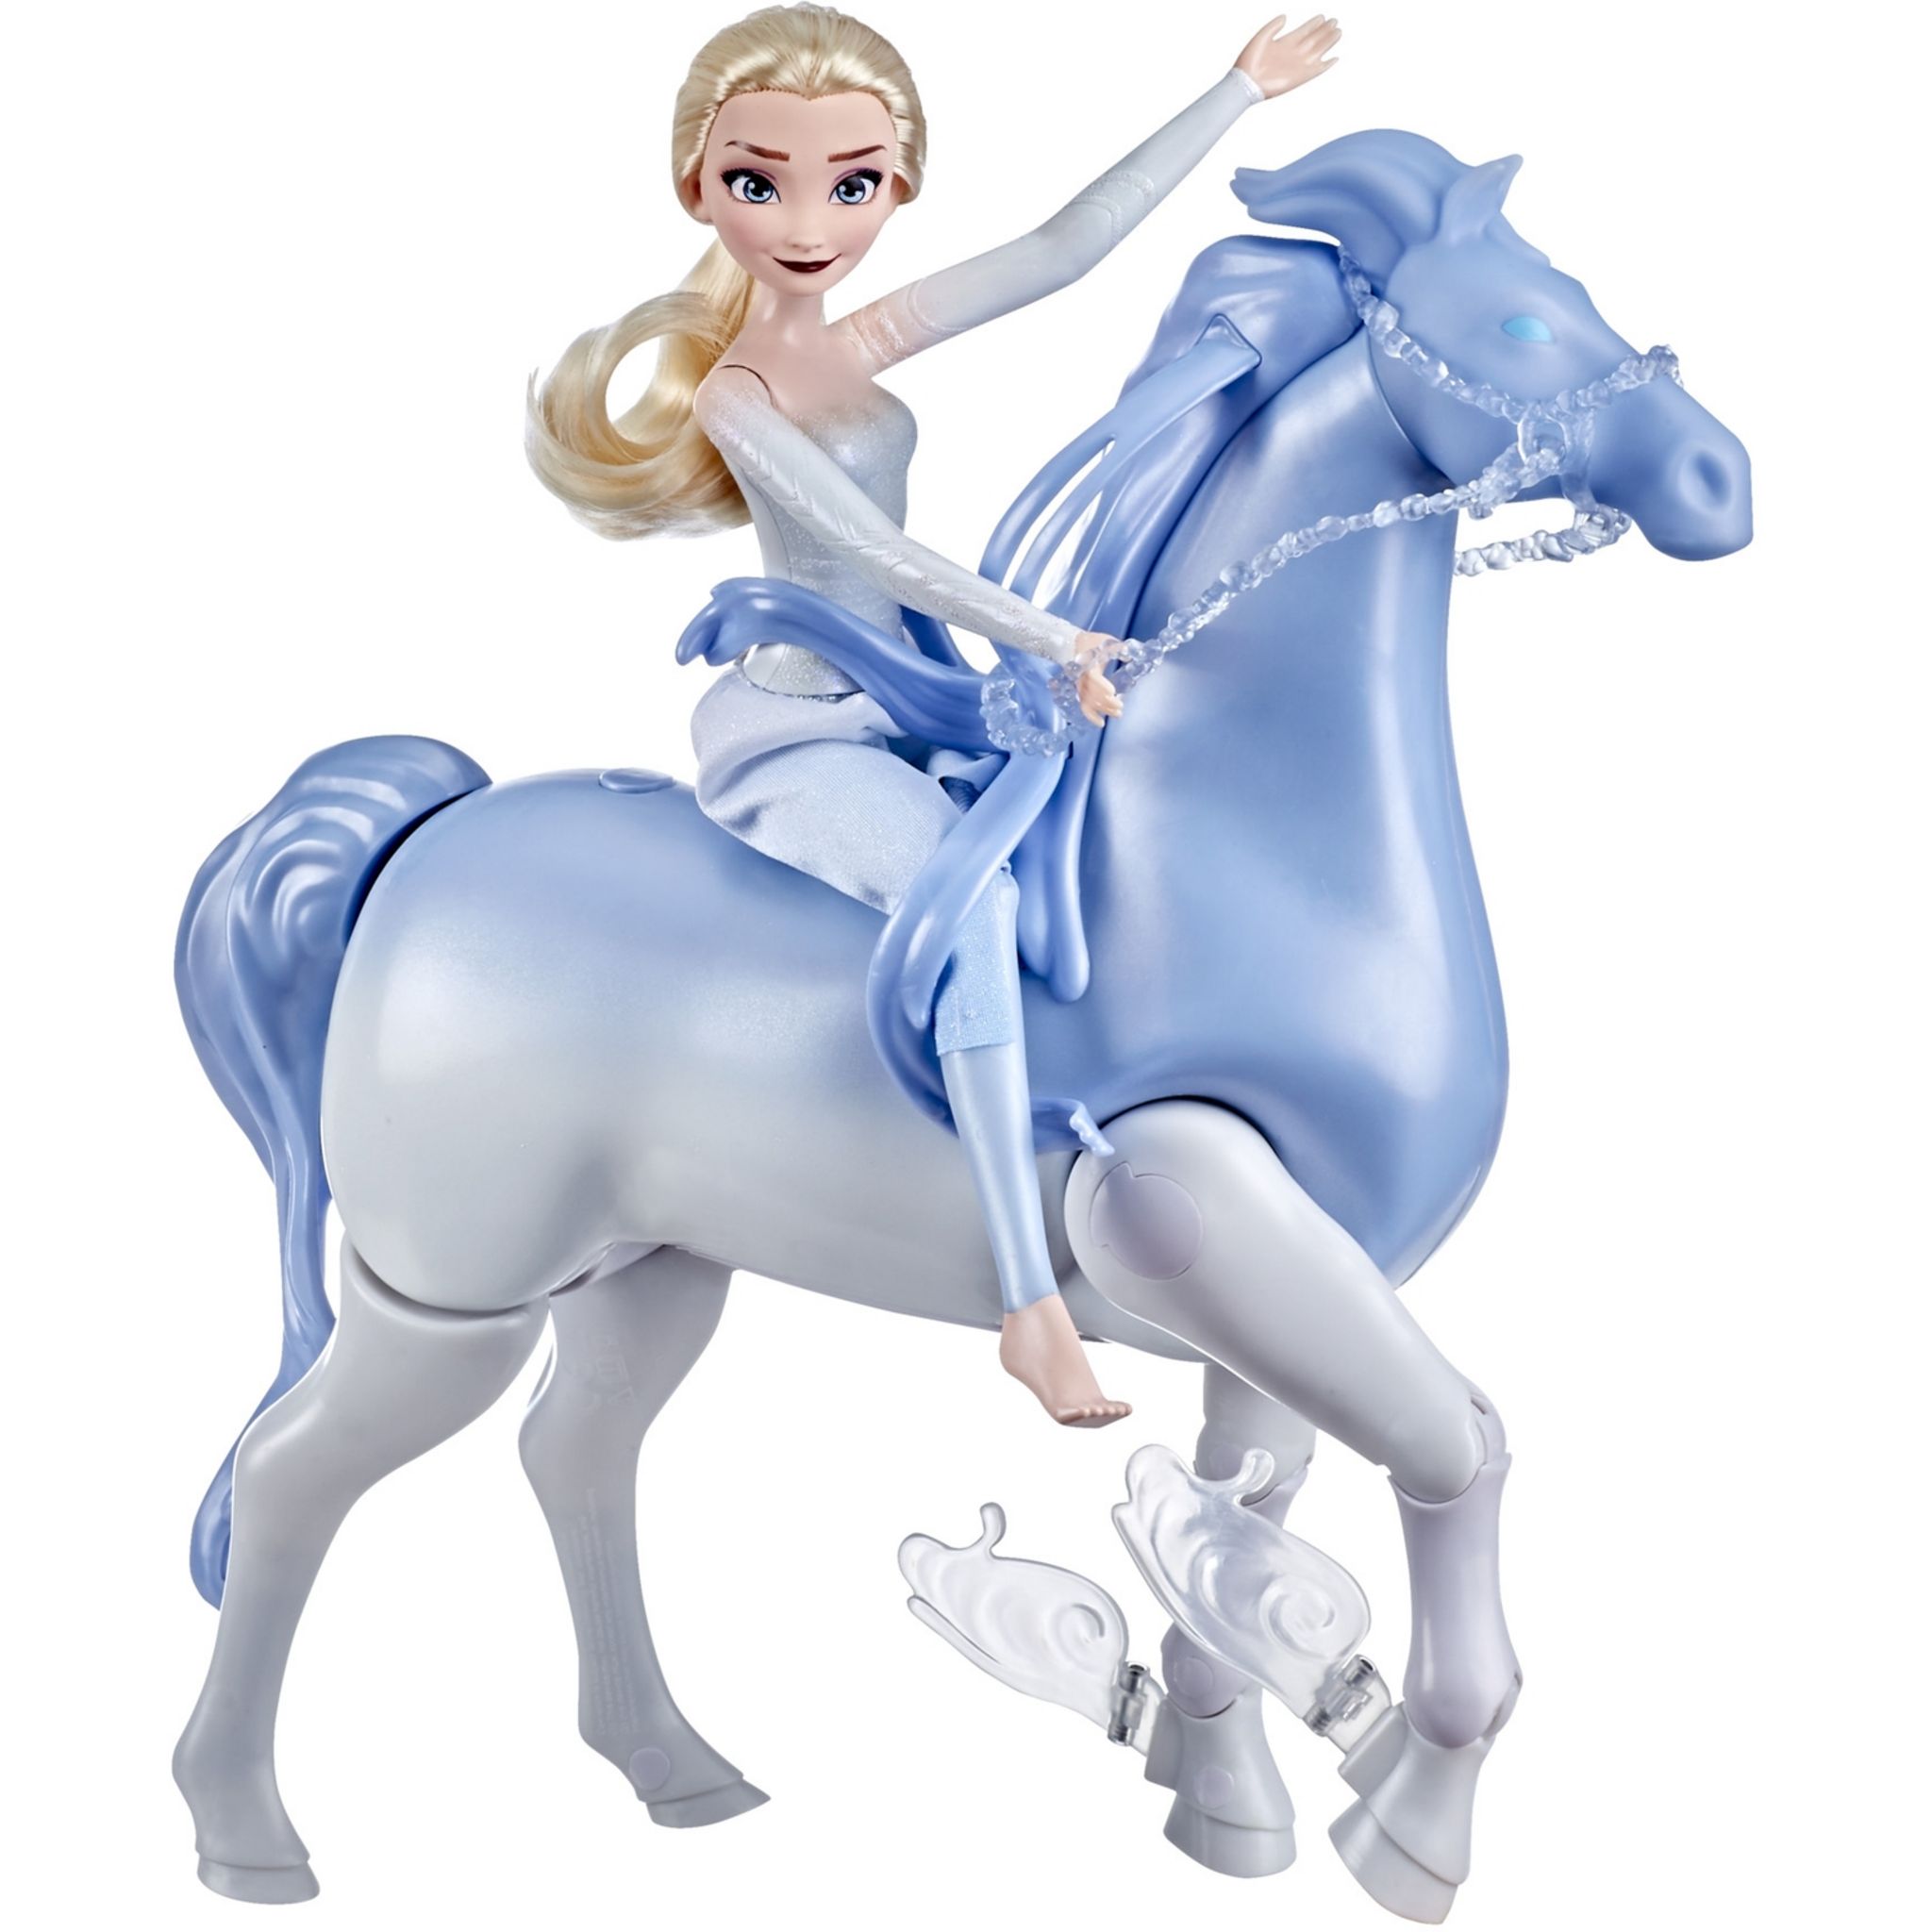 Figurine en carton Elsa La Reine des Neiges 2 en robe bleu au défi